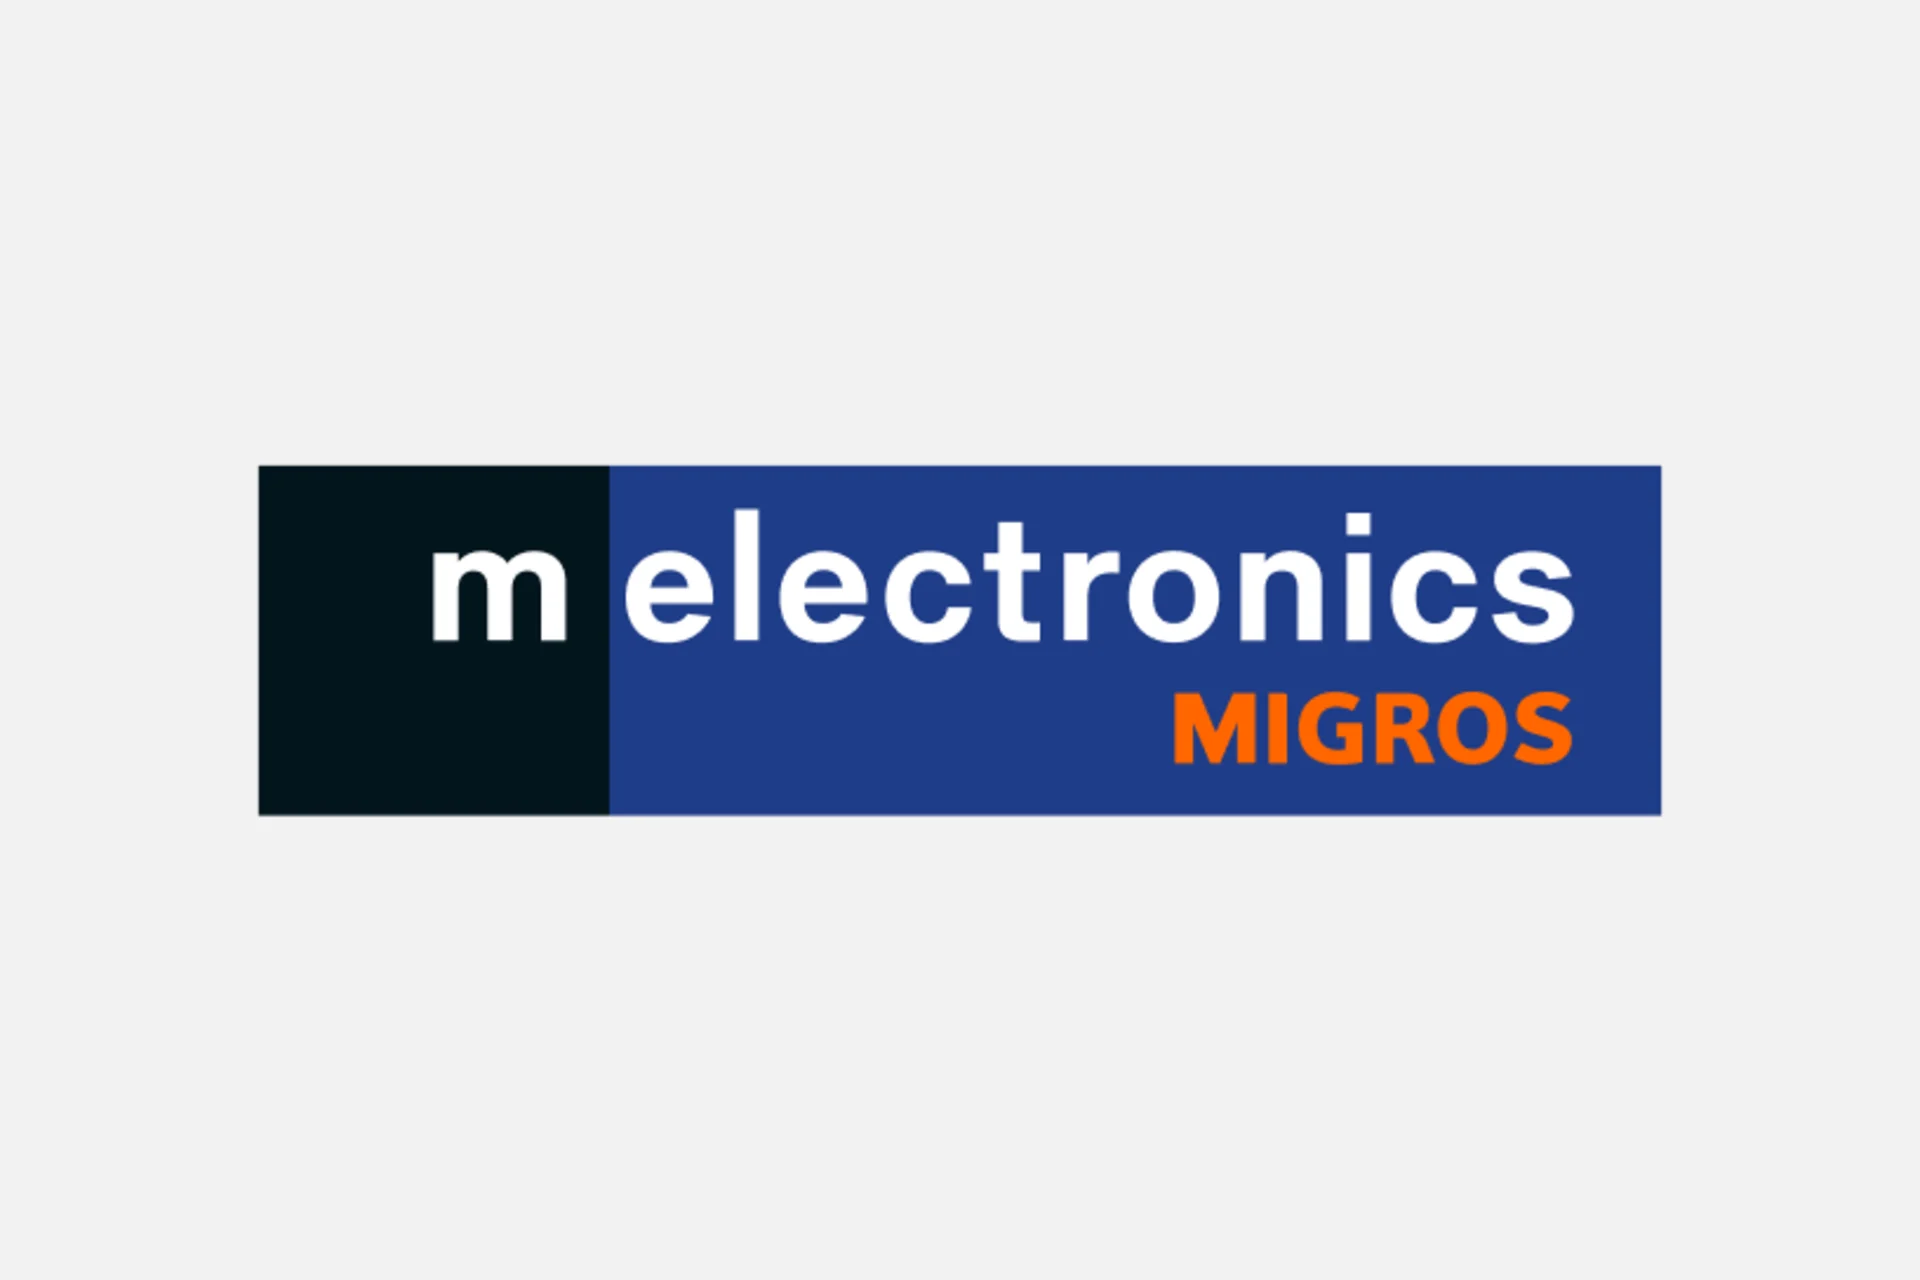 Logo du melectronics